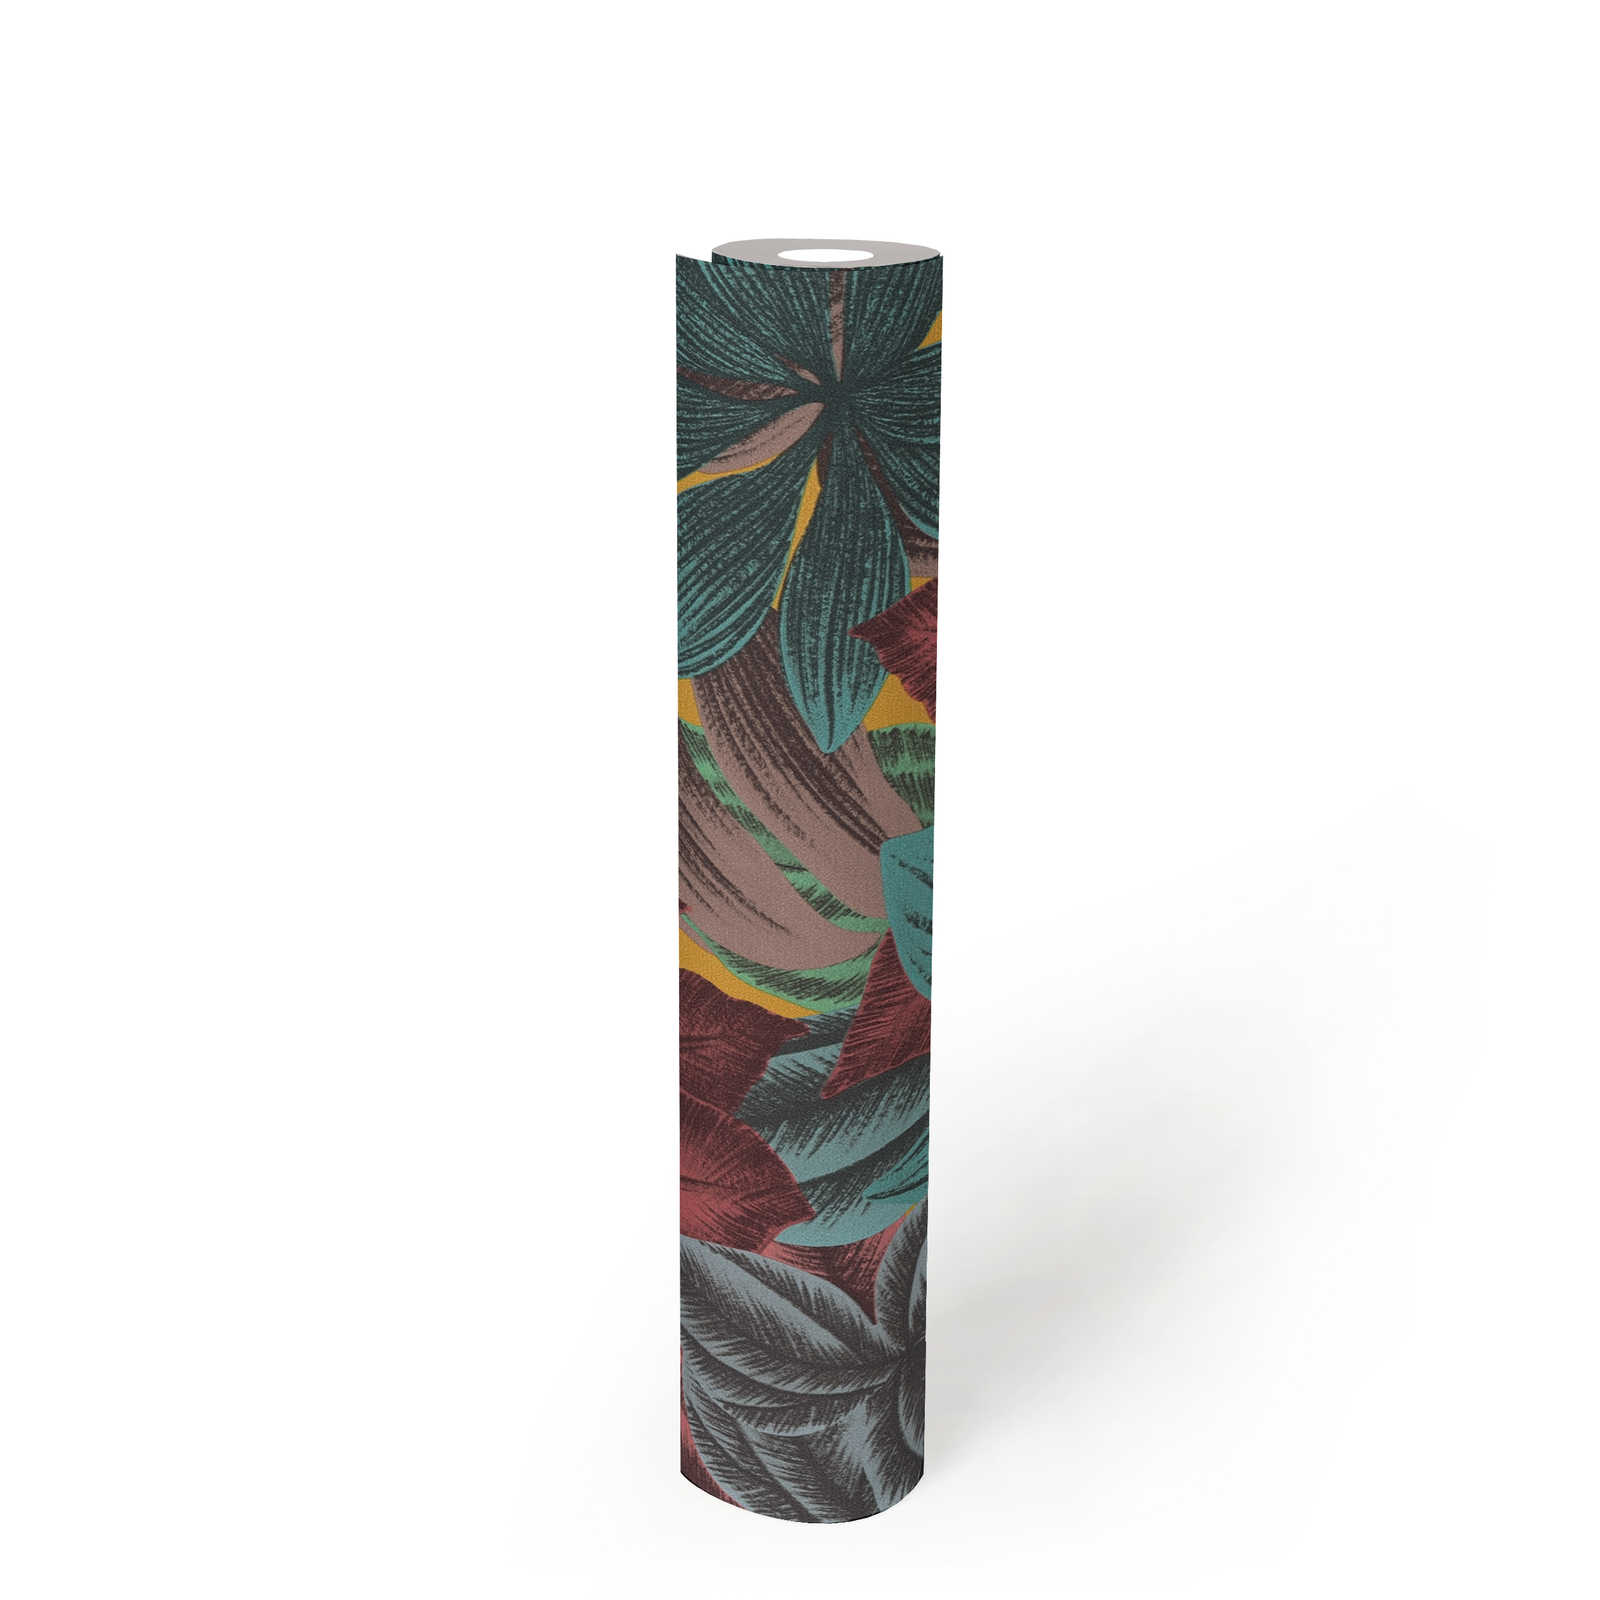             Papel pintado no tejido con motivo de hojas en colores vivos - multicolor, azul, rosa
        